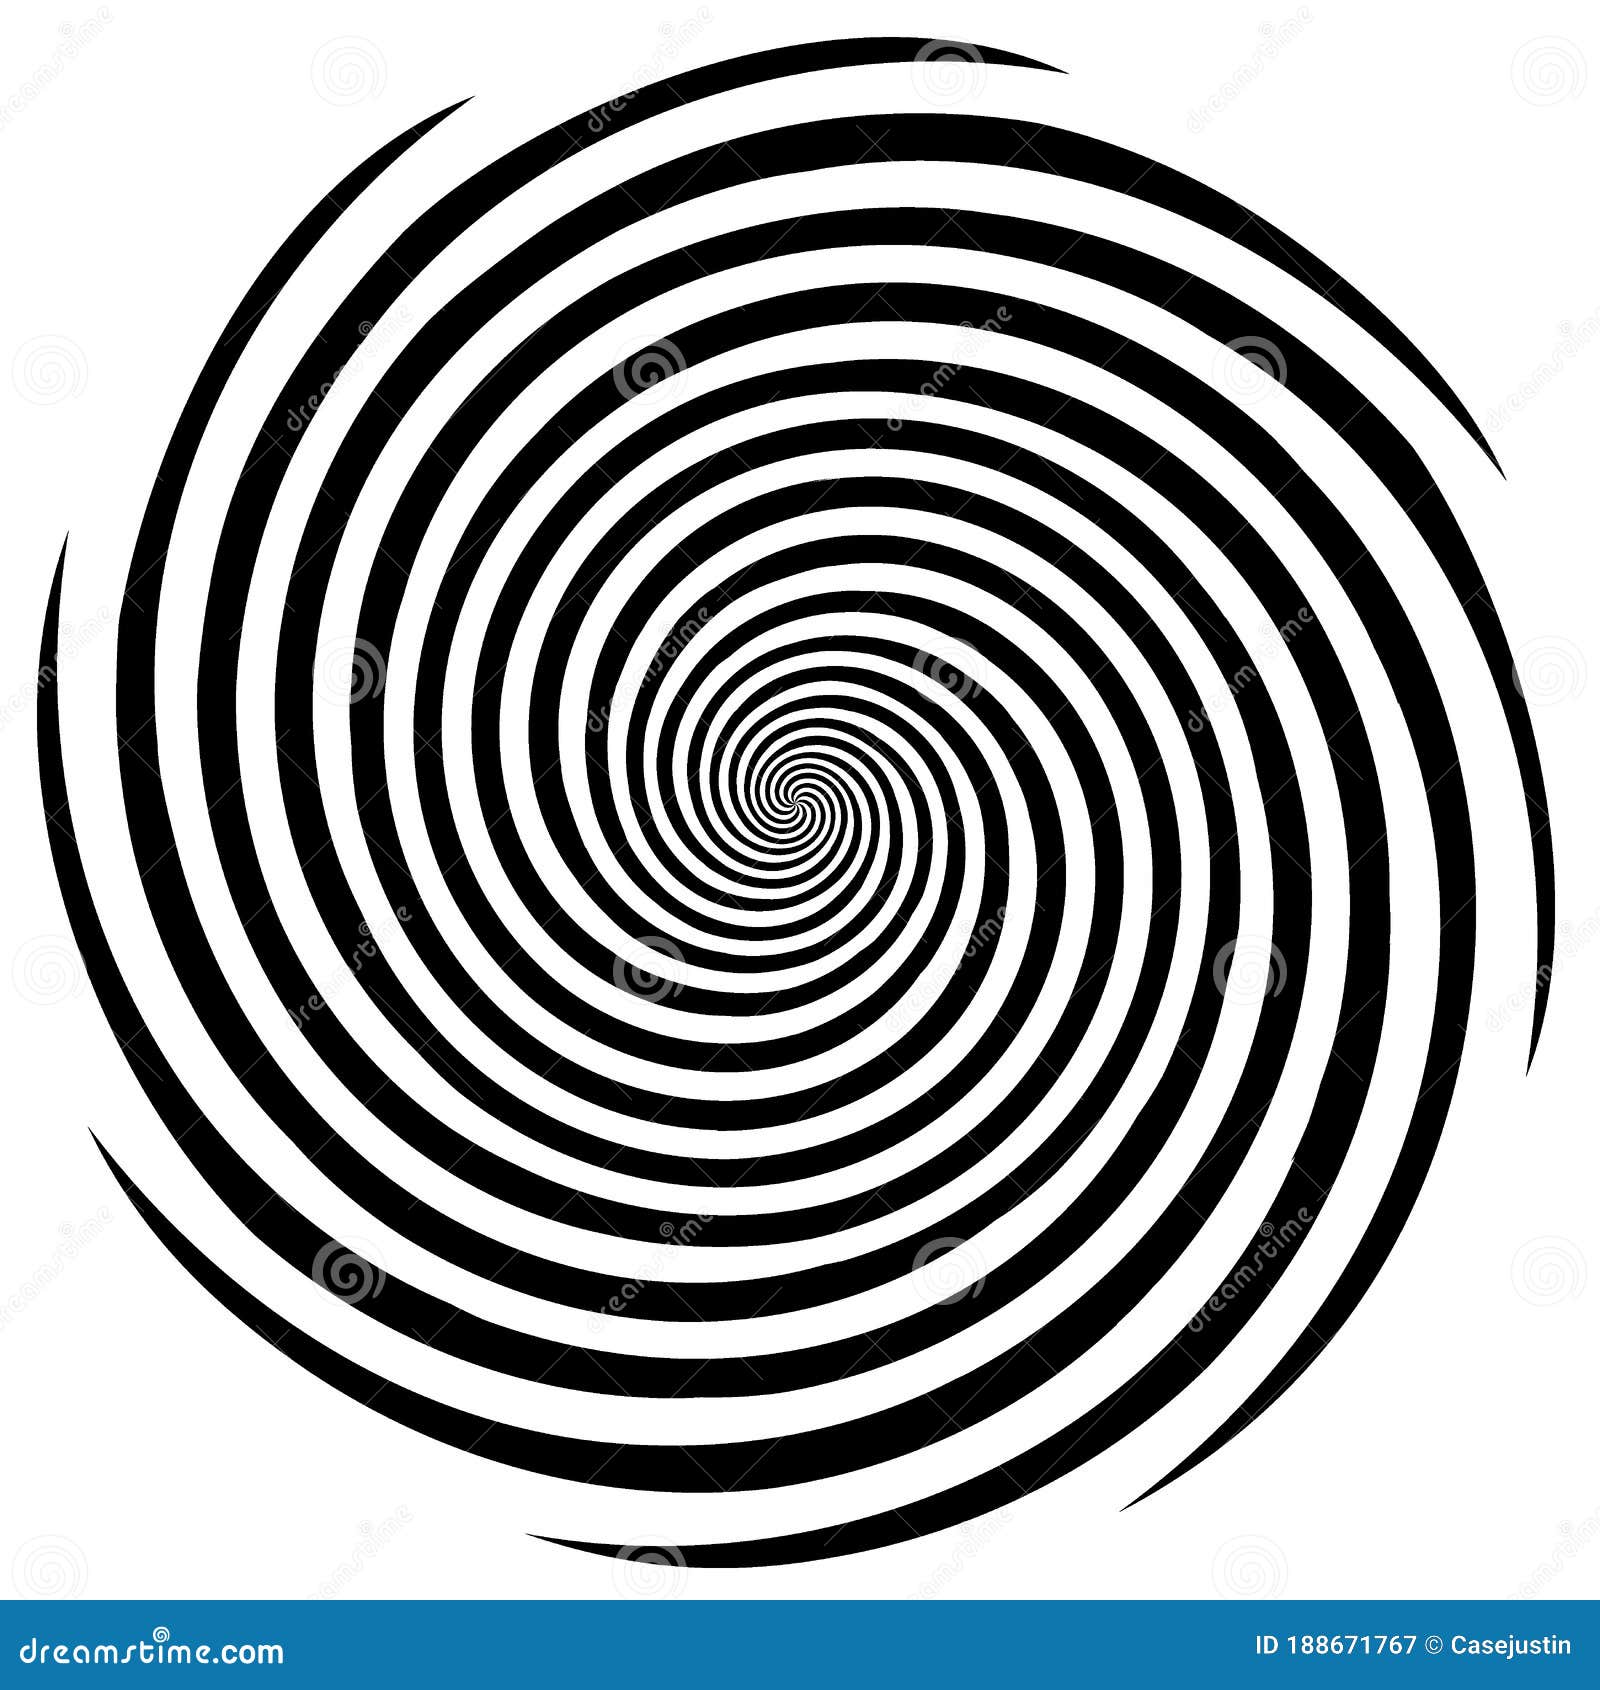 hypnosis spiral  pattern